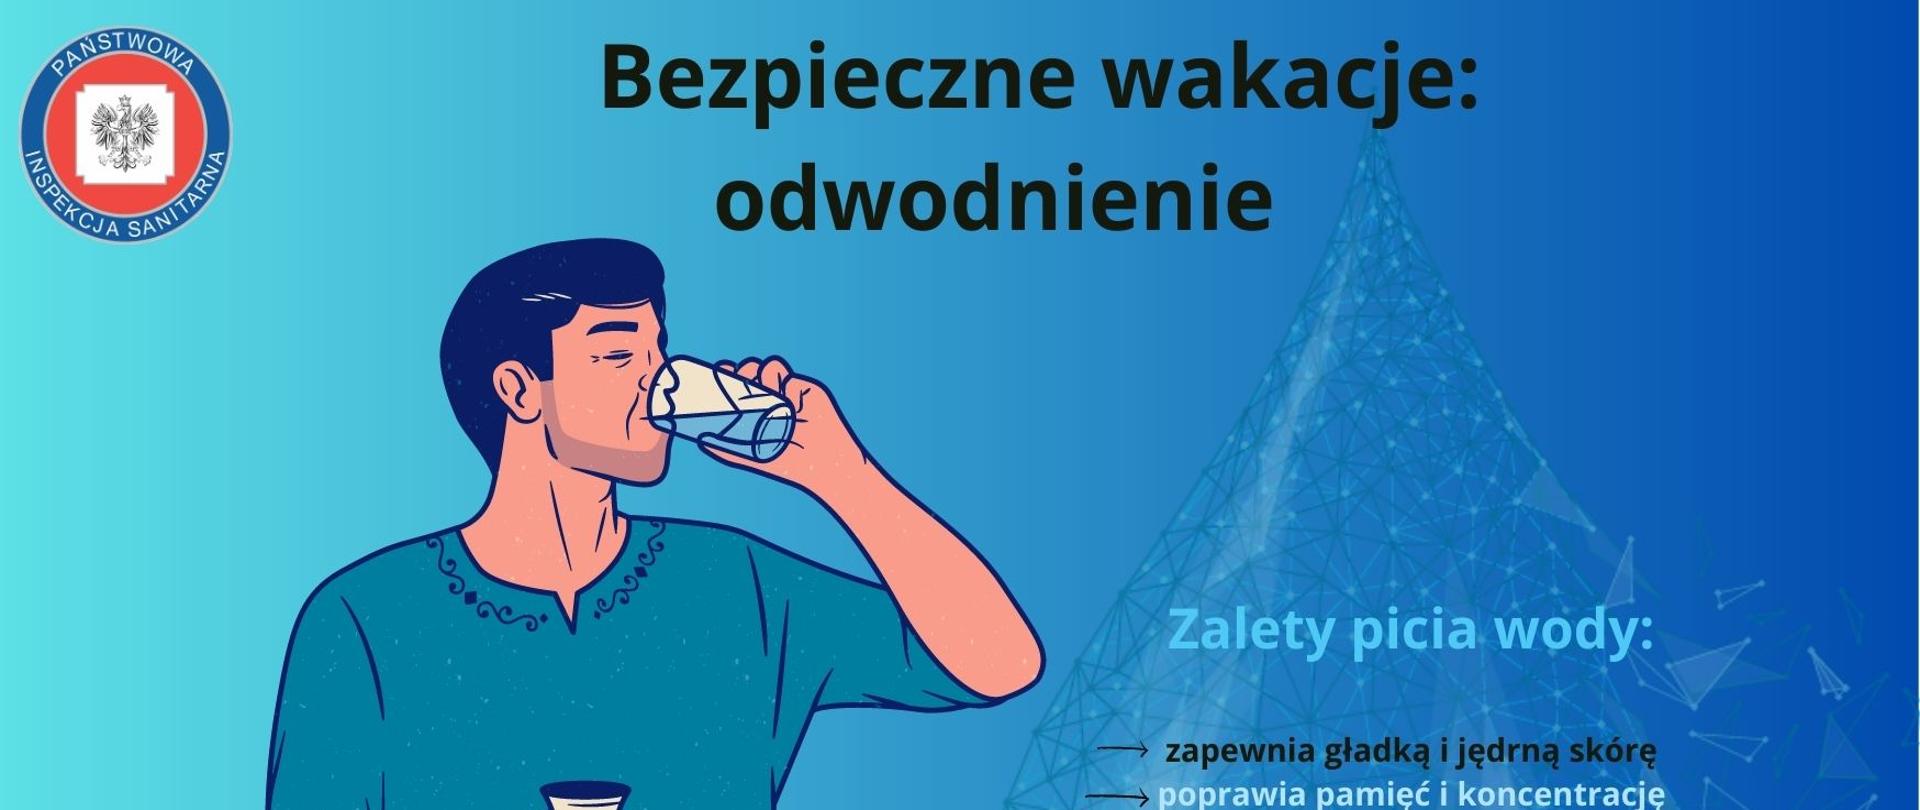 Grafika przedstawia mężczyznę pijącego wodę oraz kroplę a na niej wypisane zalety picia wody.